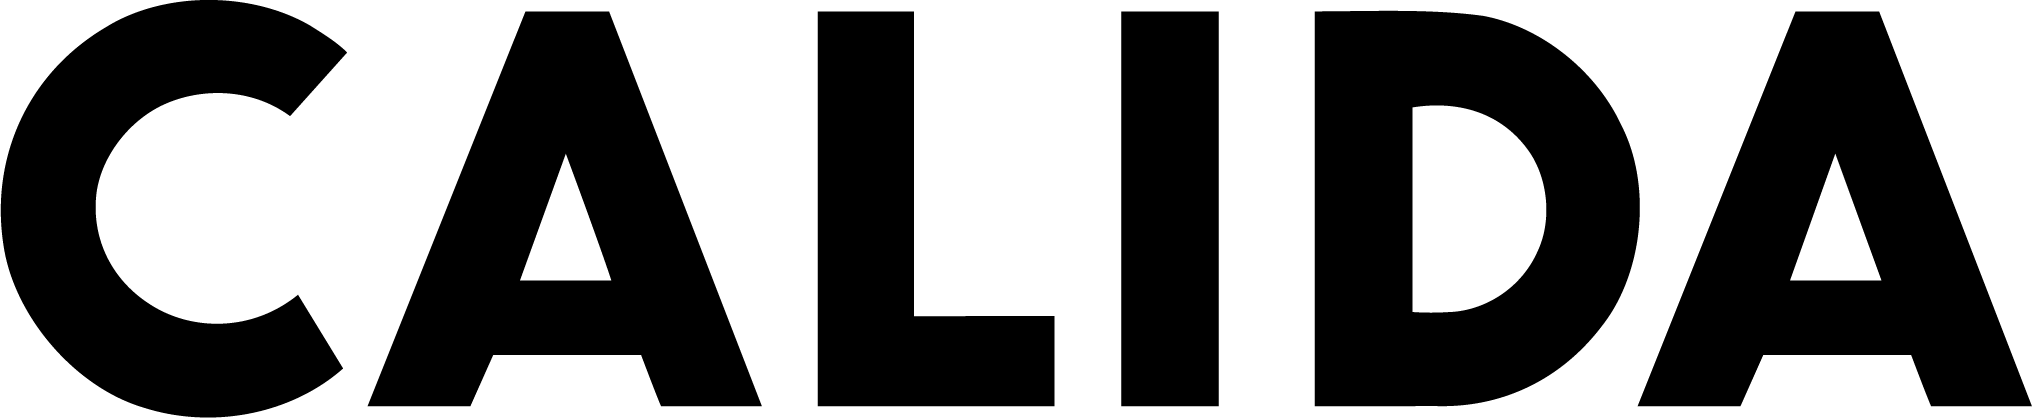 Logo von Calida